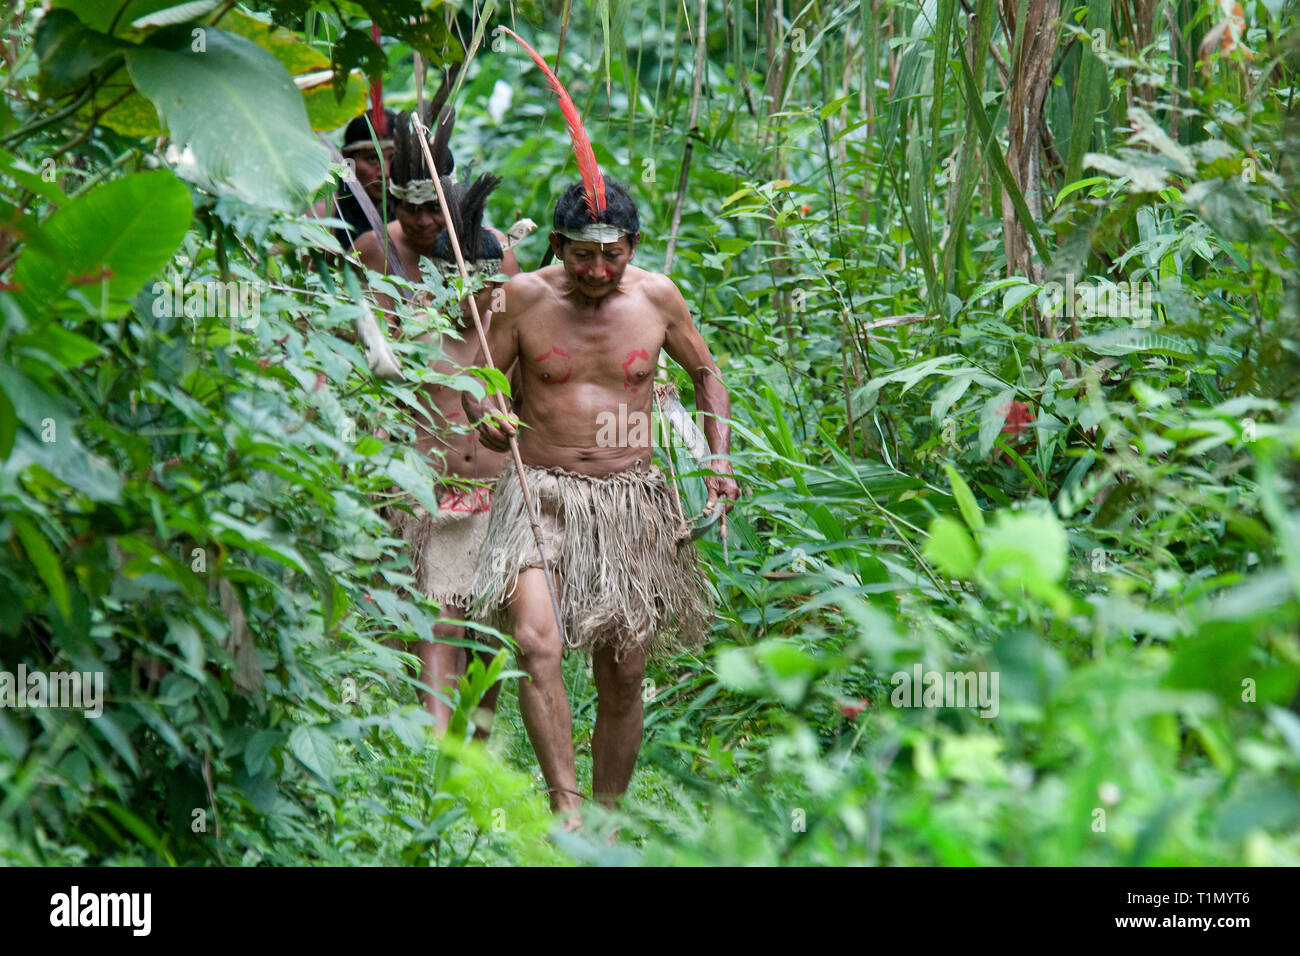 Maleku Indianer, Die Ureinwohner, die ihre Tradition hält bis heute, Palente Magarita, Costa Rica Stockfoto